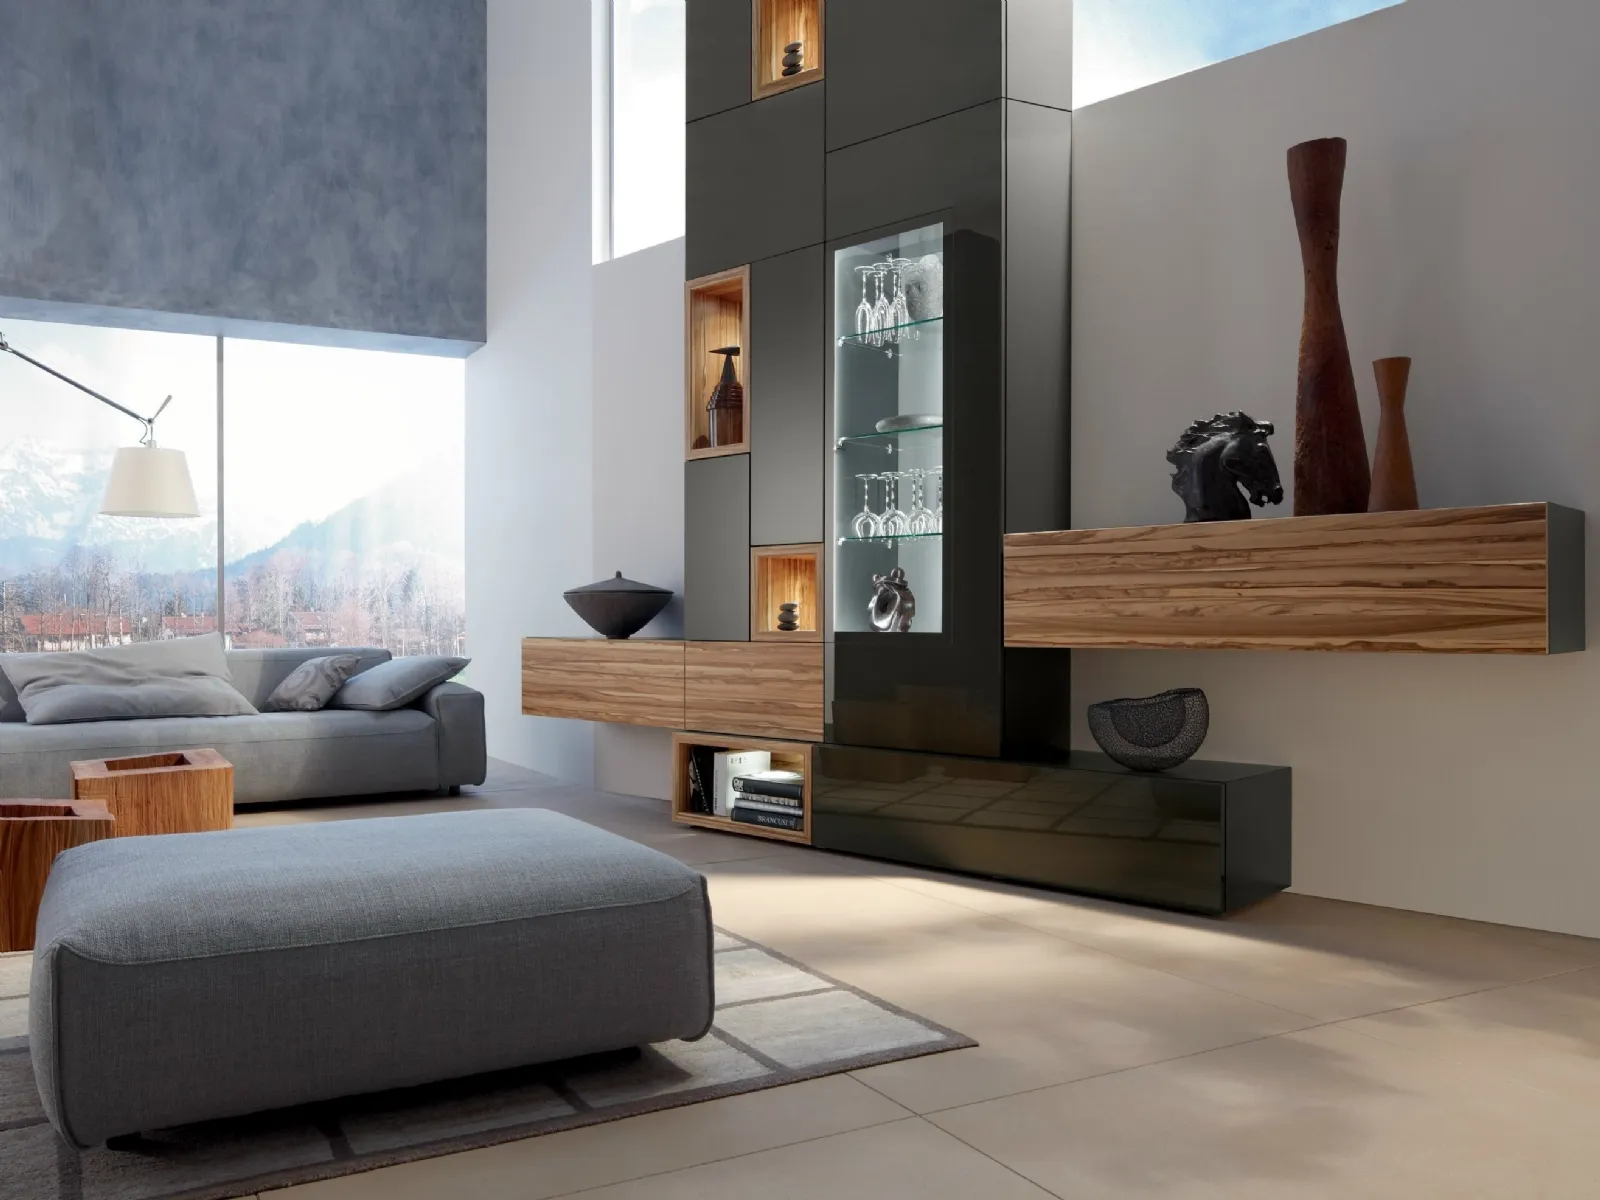 Soggiorni moderni idee e soluzioni mobili soggiorno for Soggiorno arredamento moderno